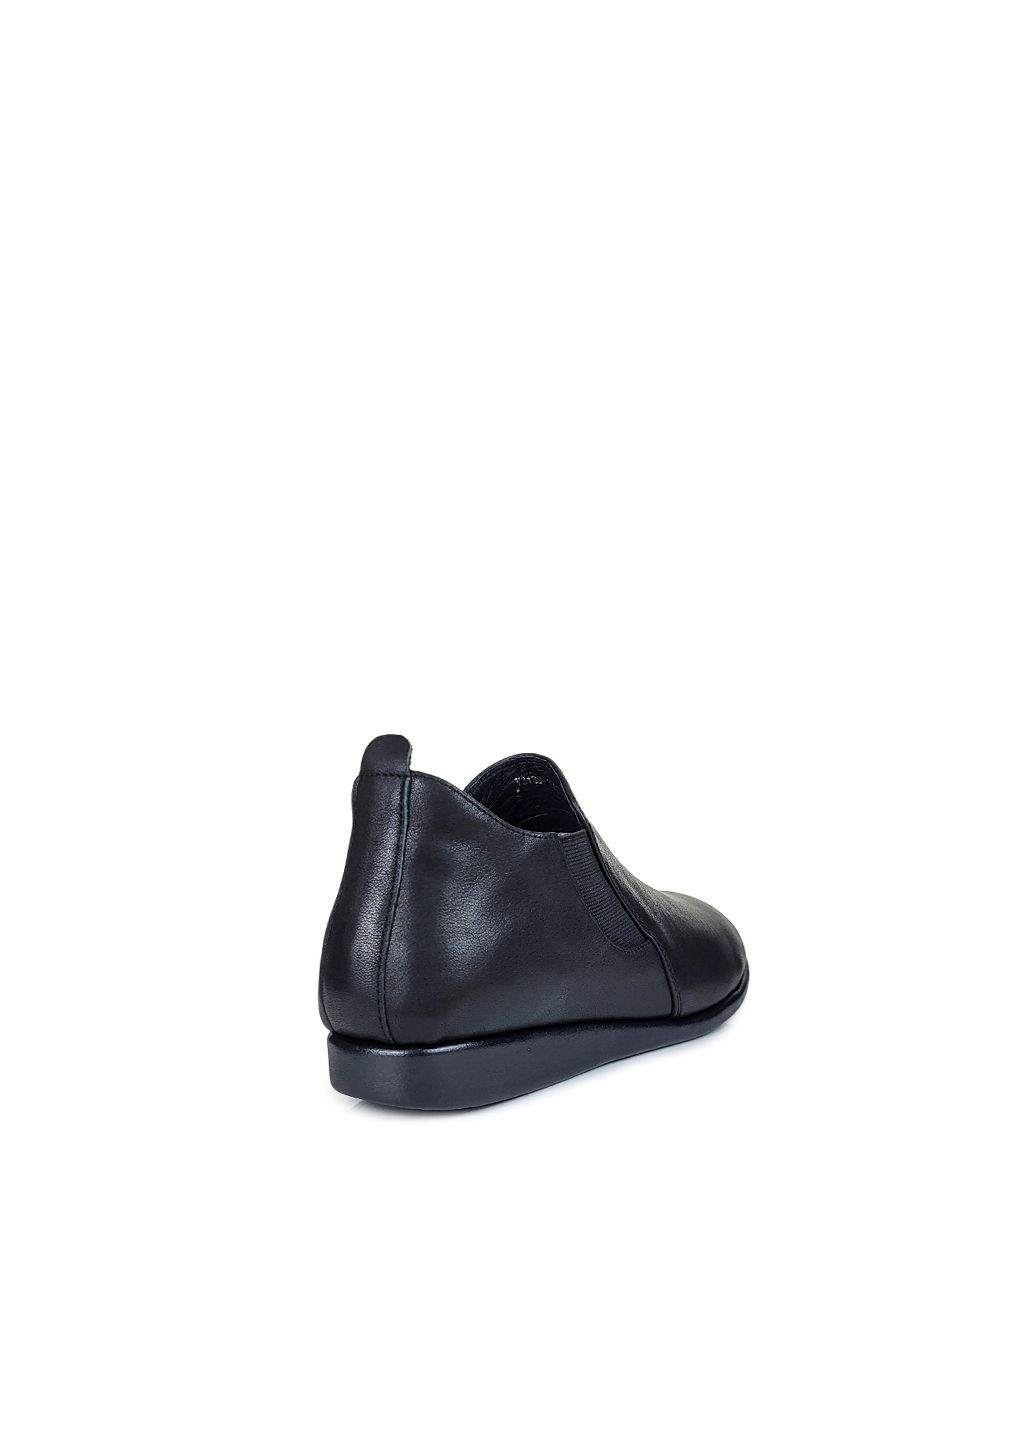 Женские удобные черные туфли без каблука,,V3139-10-1 чёр,36 Berkonty без каблука